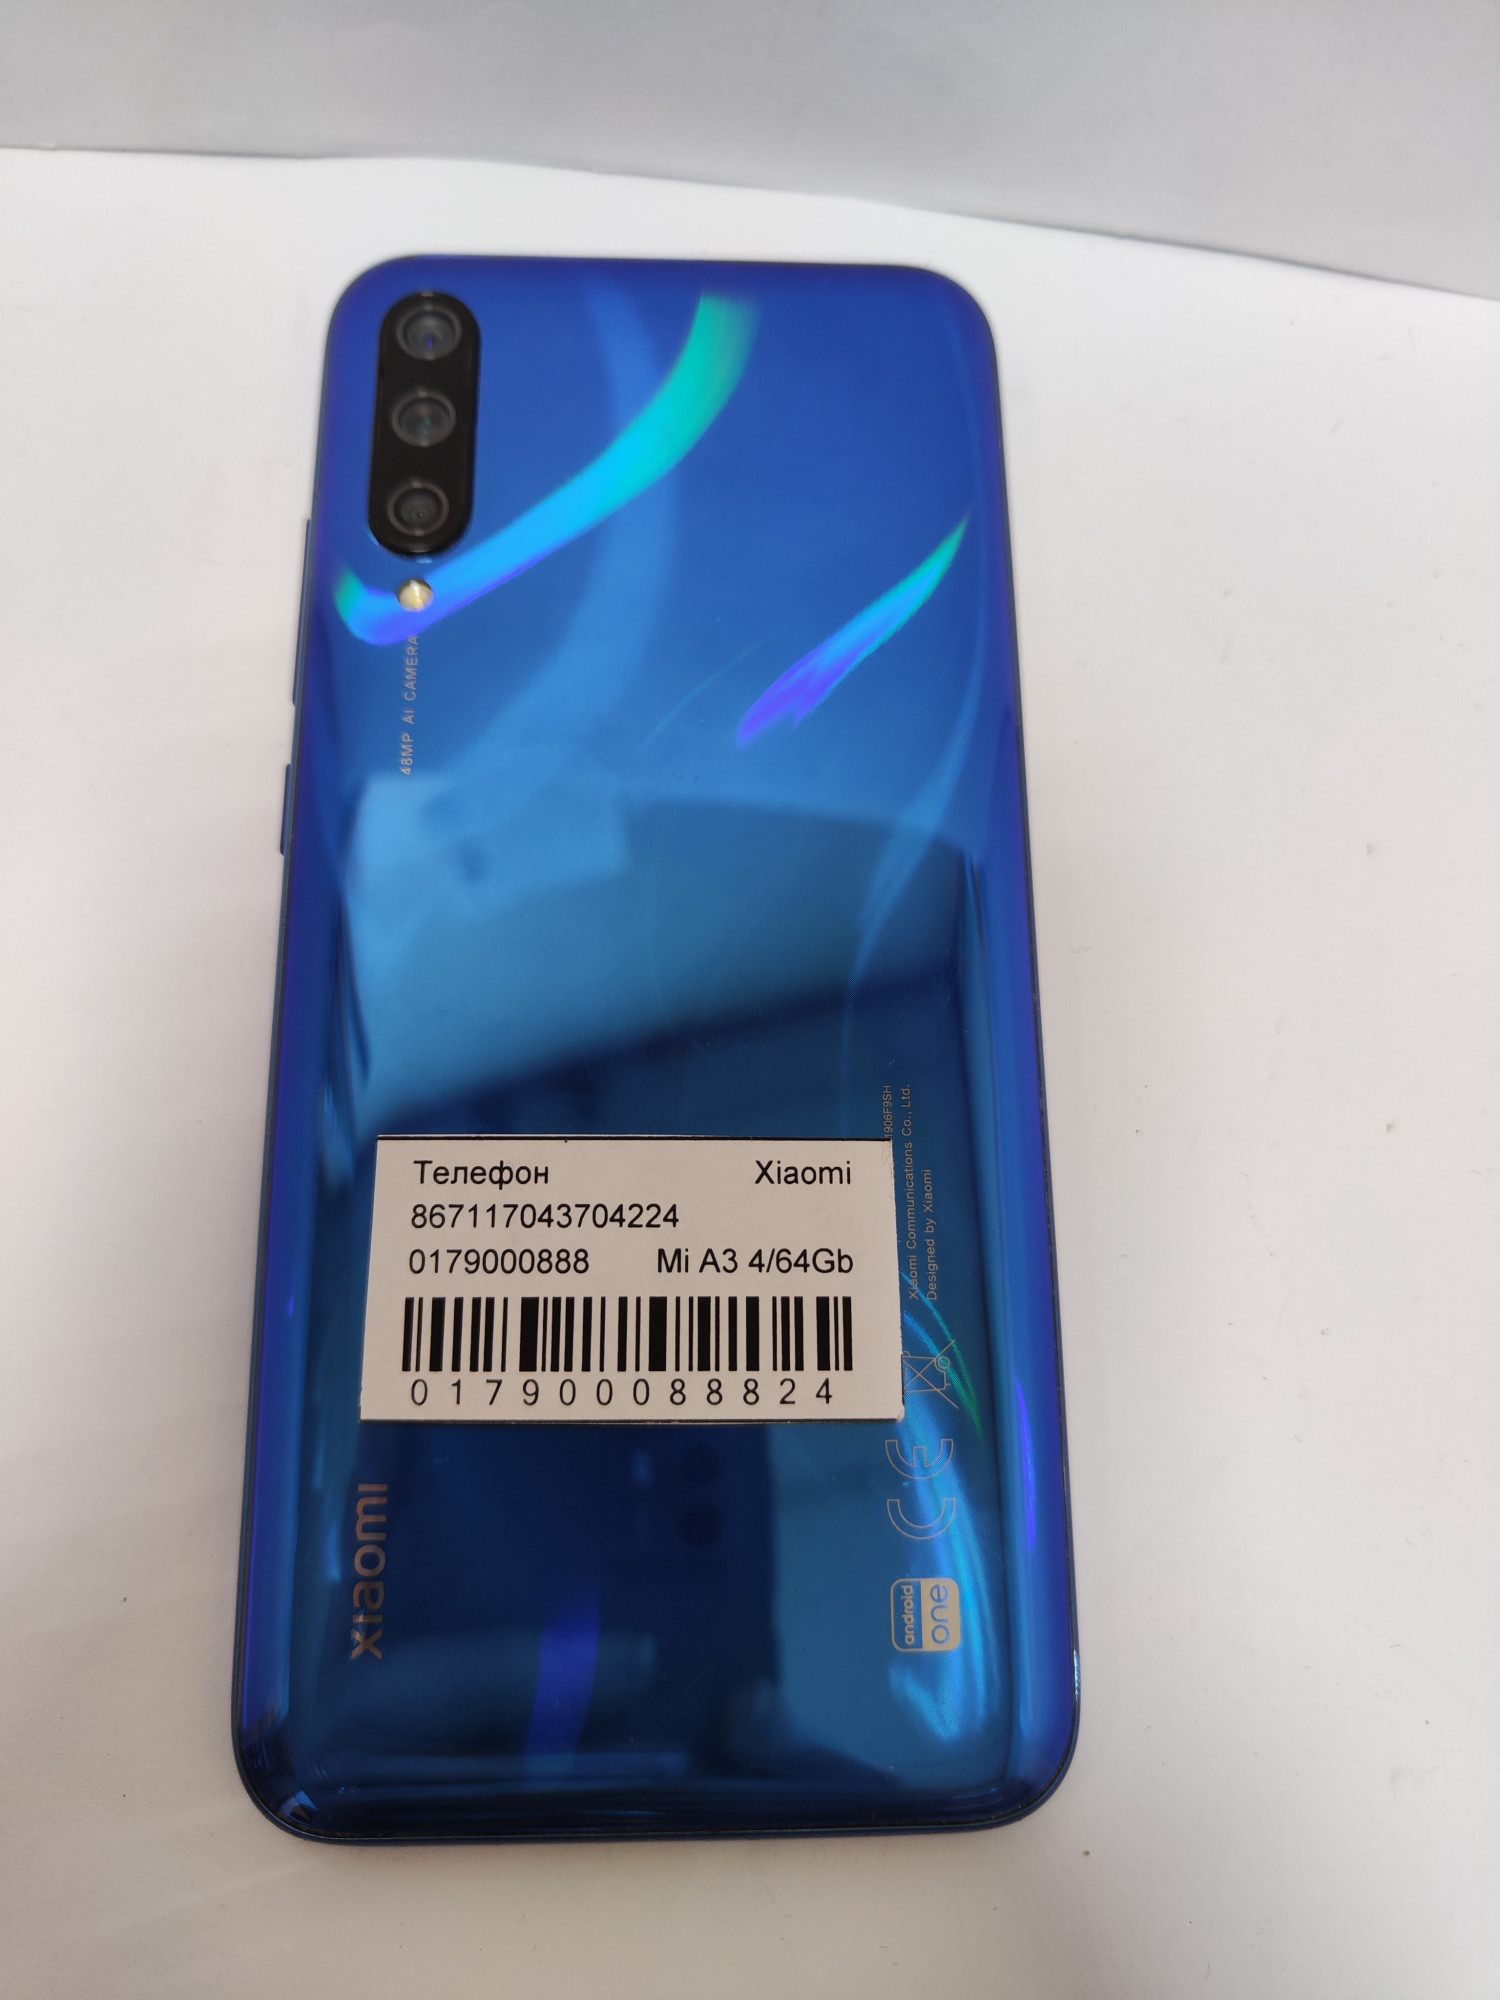 Xiaomi Mi A3 4/64Gb Not just Blue 3